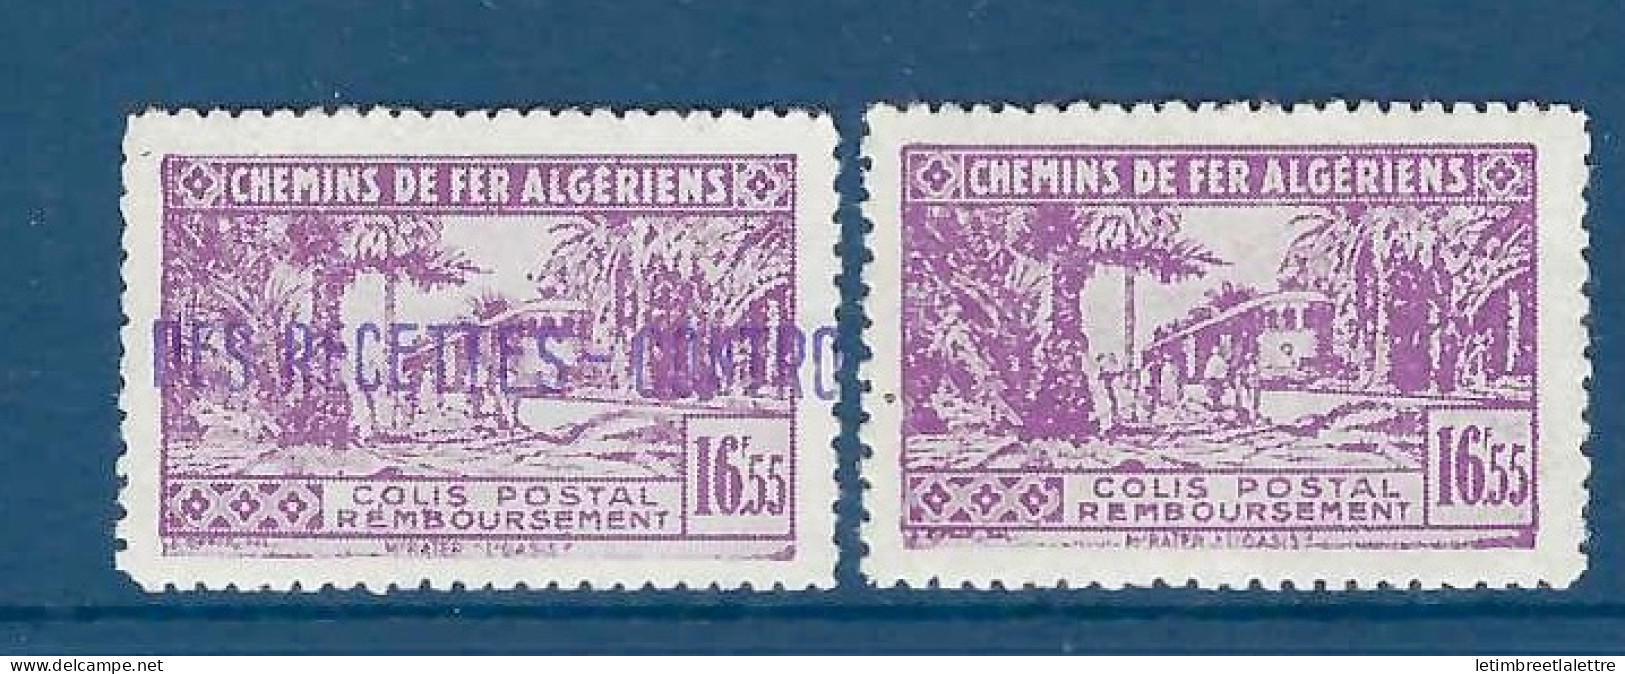 Algérie - Colis Postaux - YT N° 94 * - Neuf Avec Charnière - 1941 1942 - Postpaketten